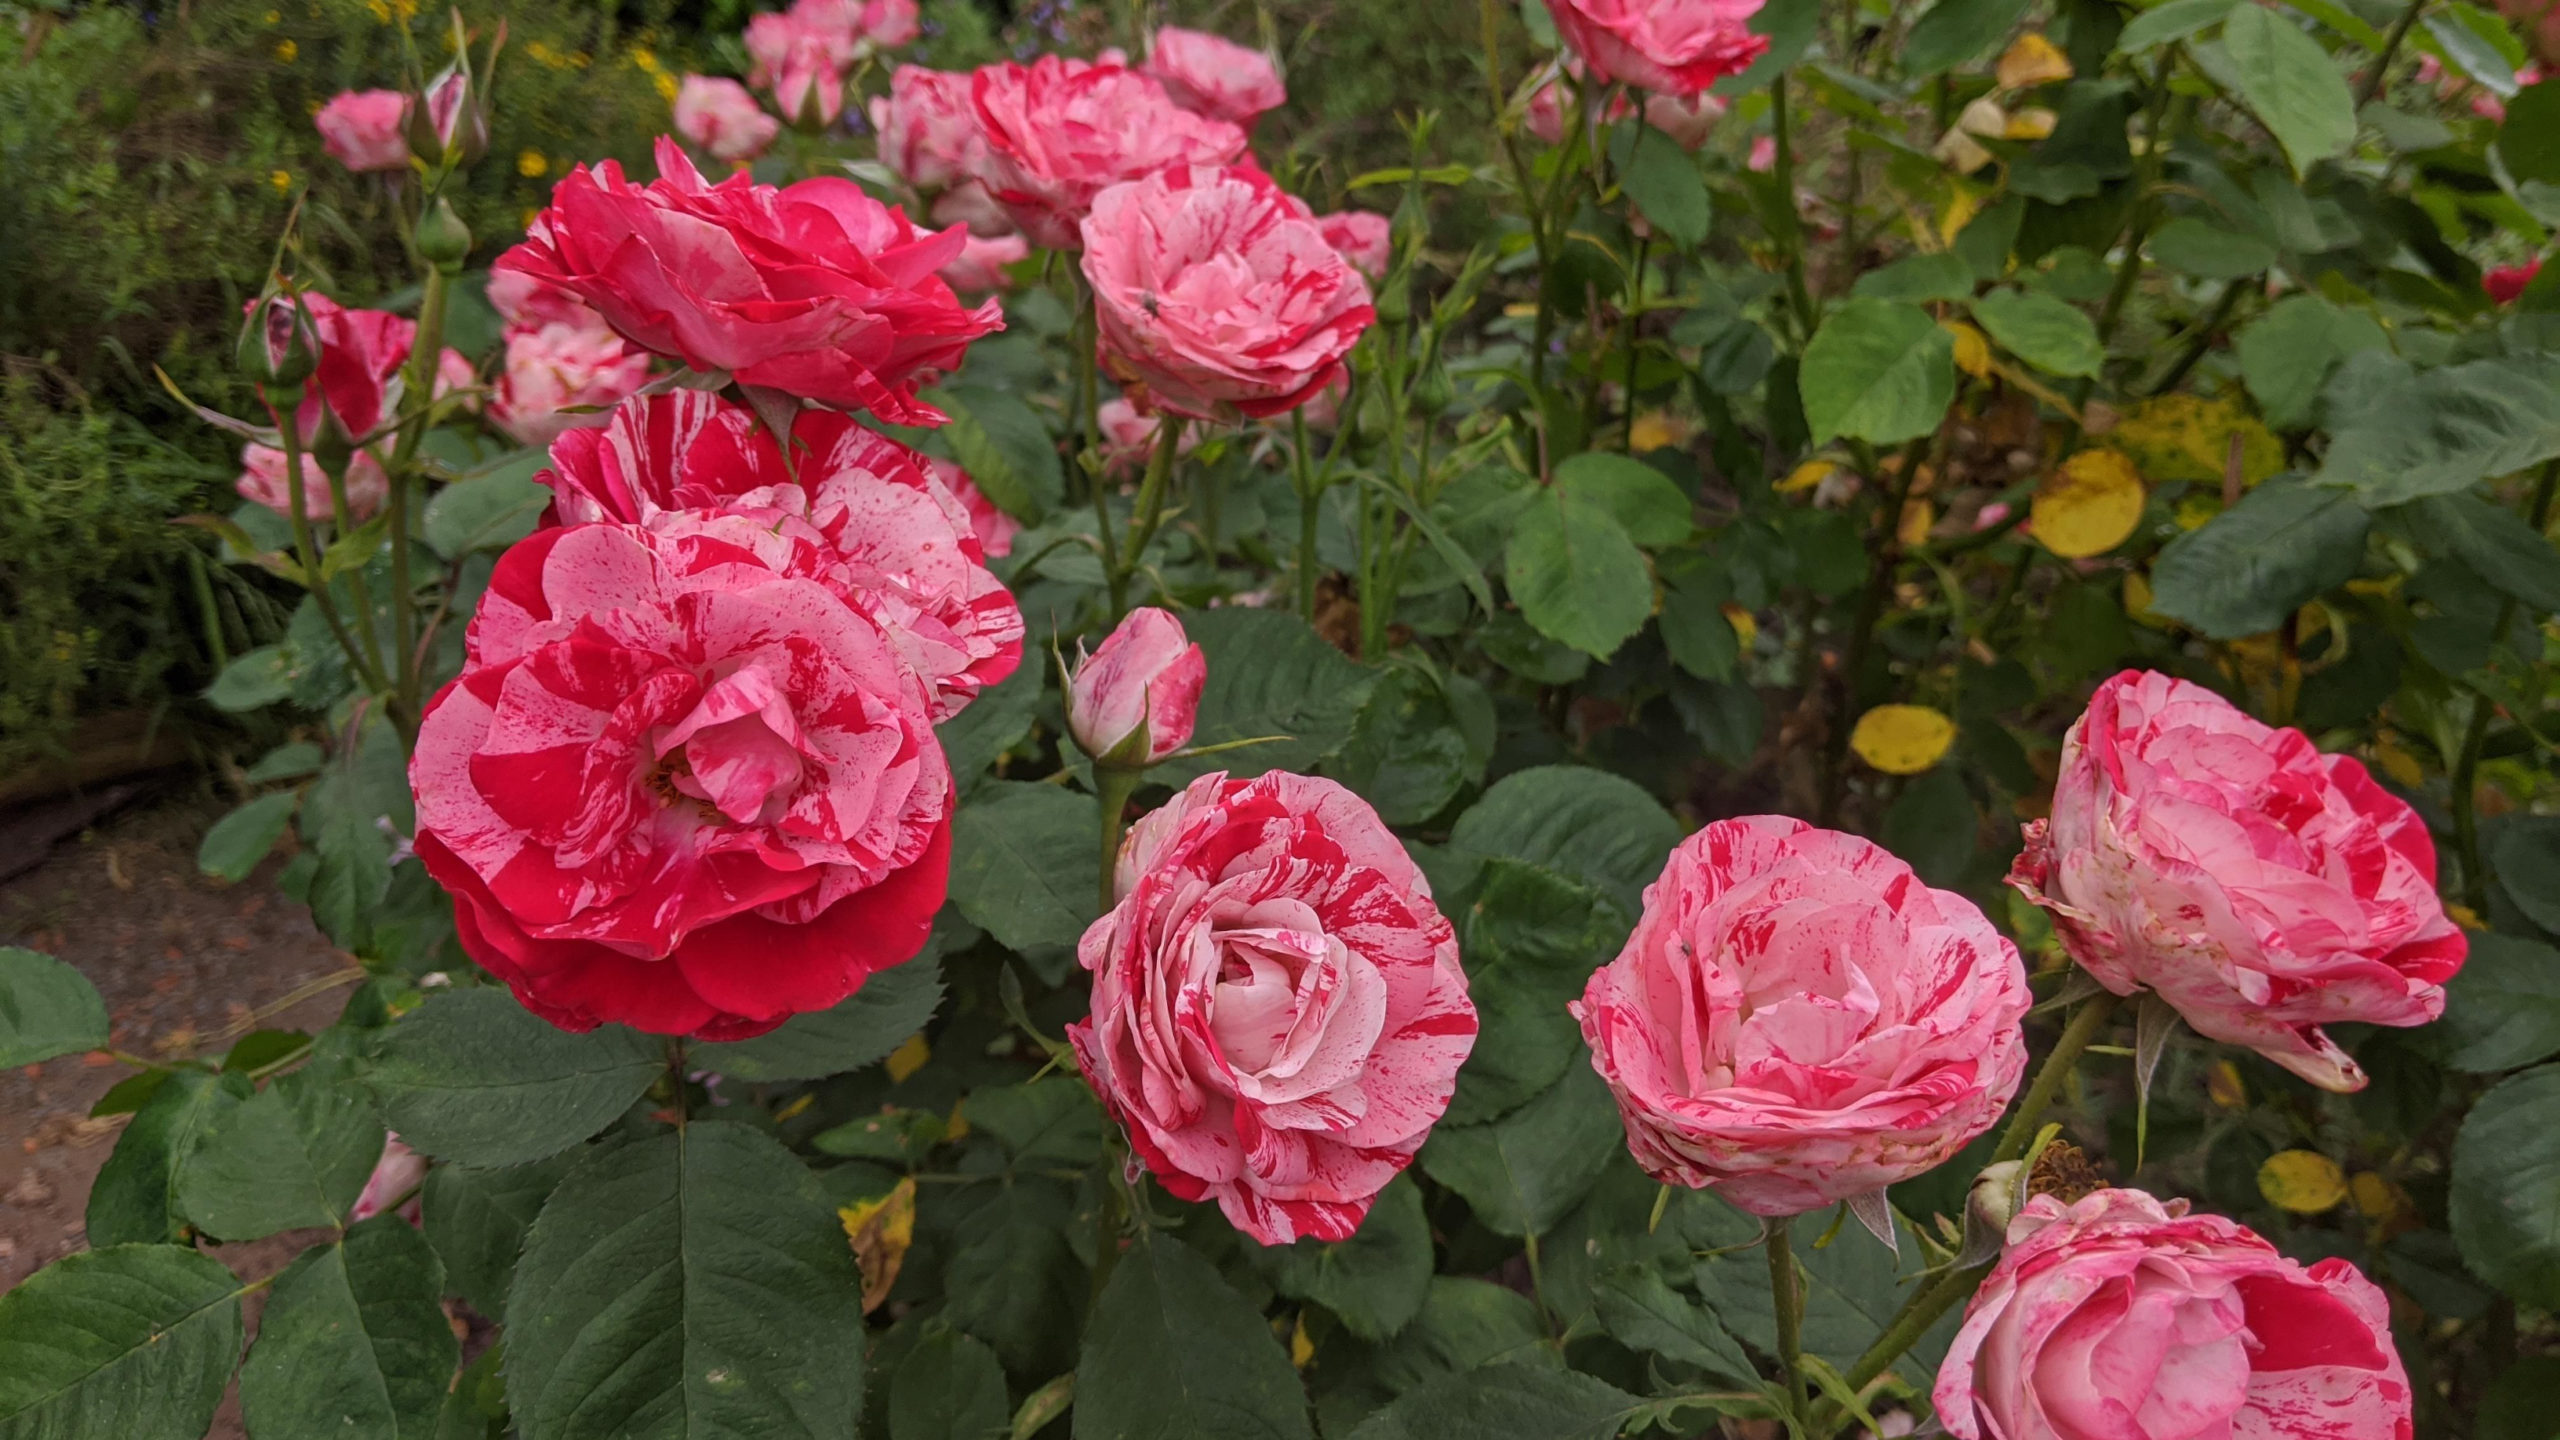 Peppermint Twist Rose in Bloom